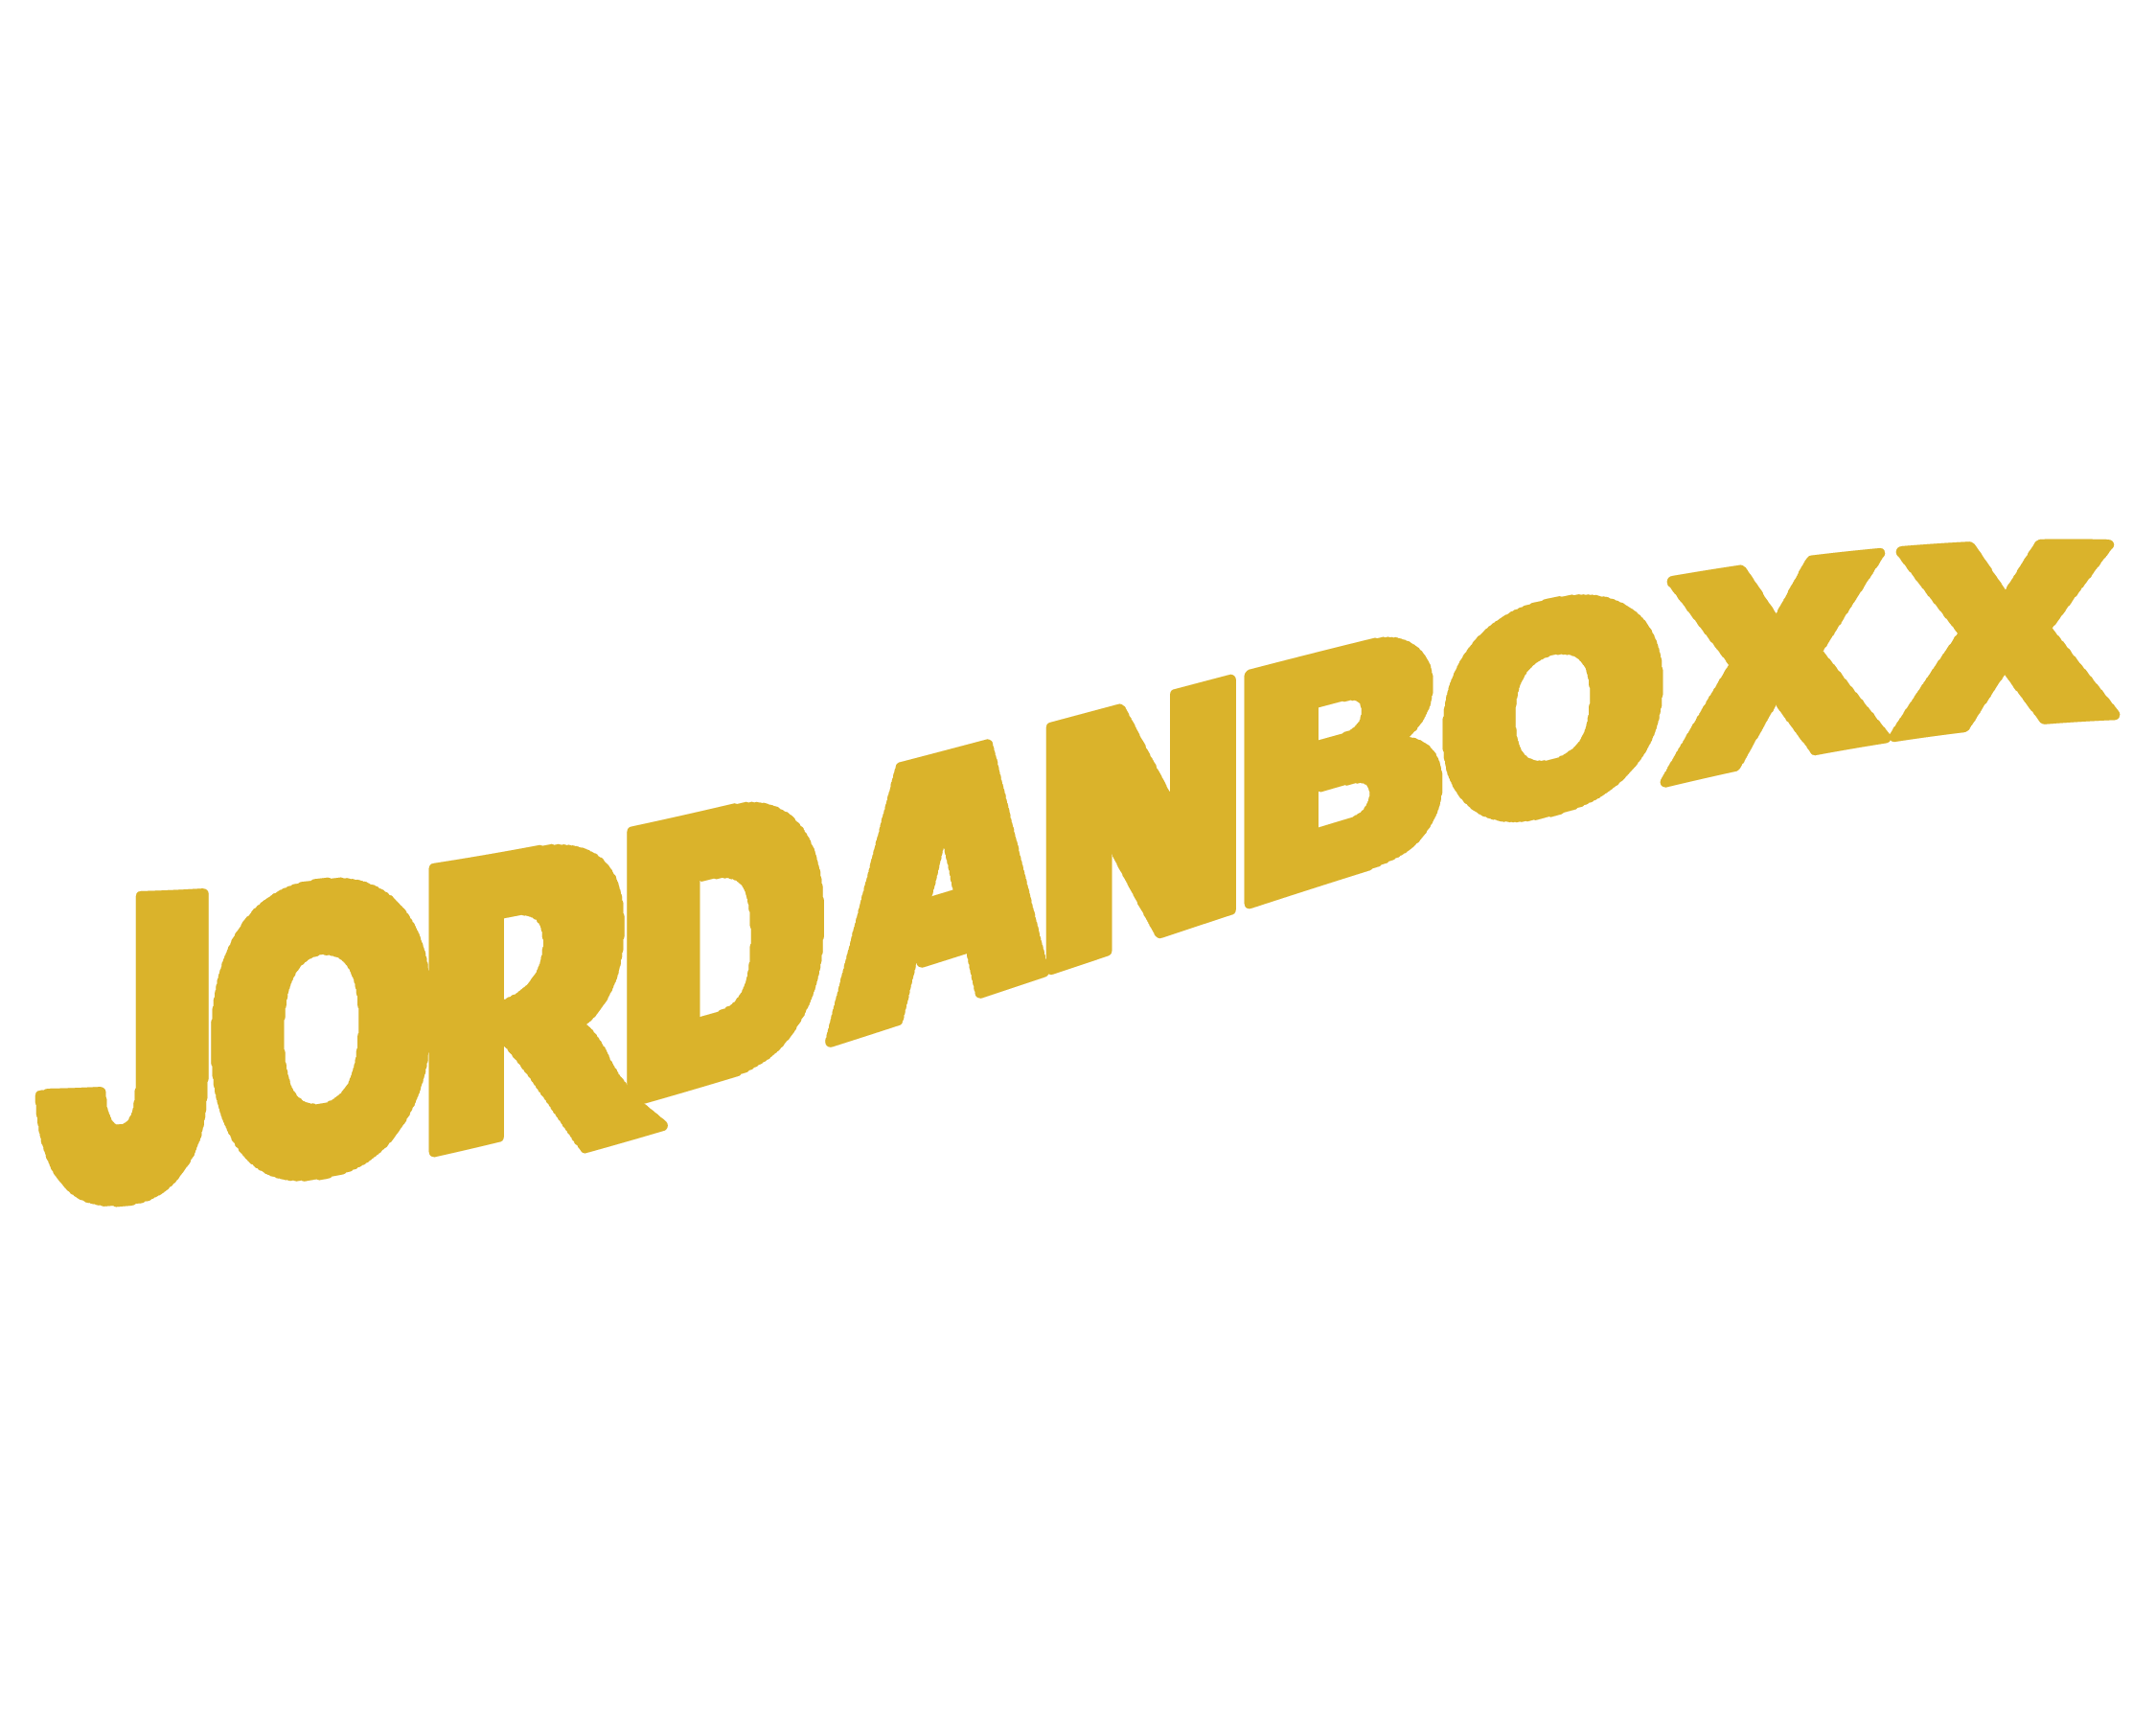  jordanboxx.com